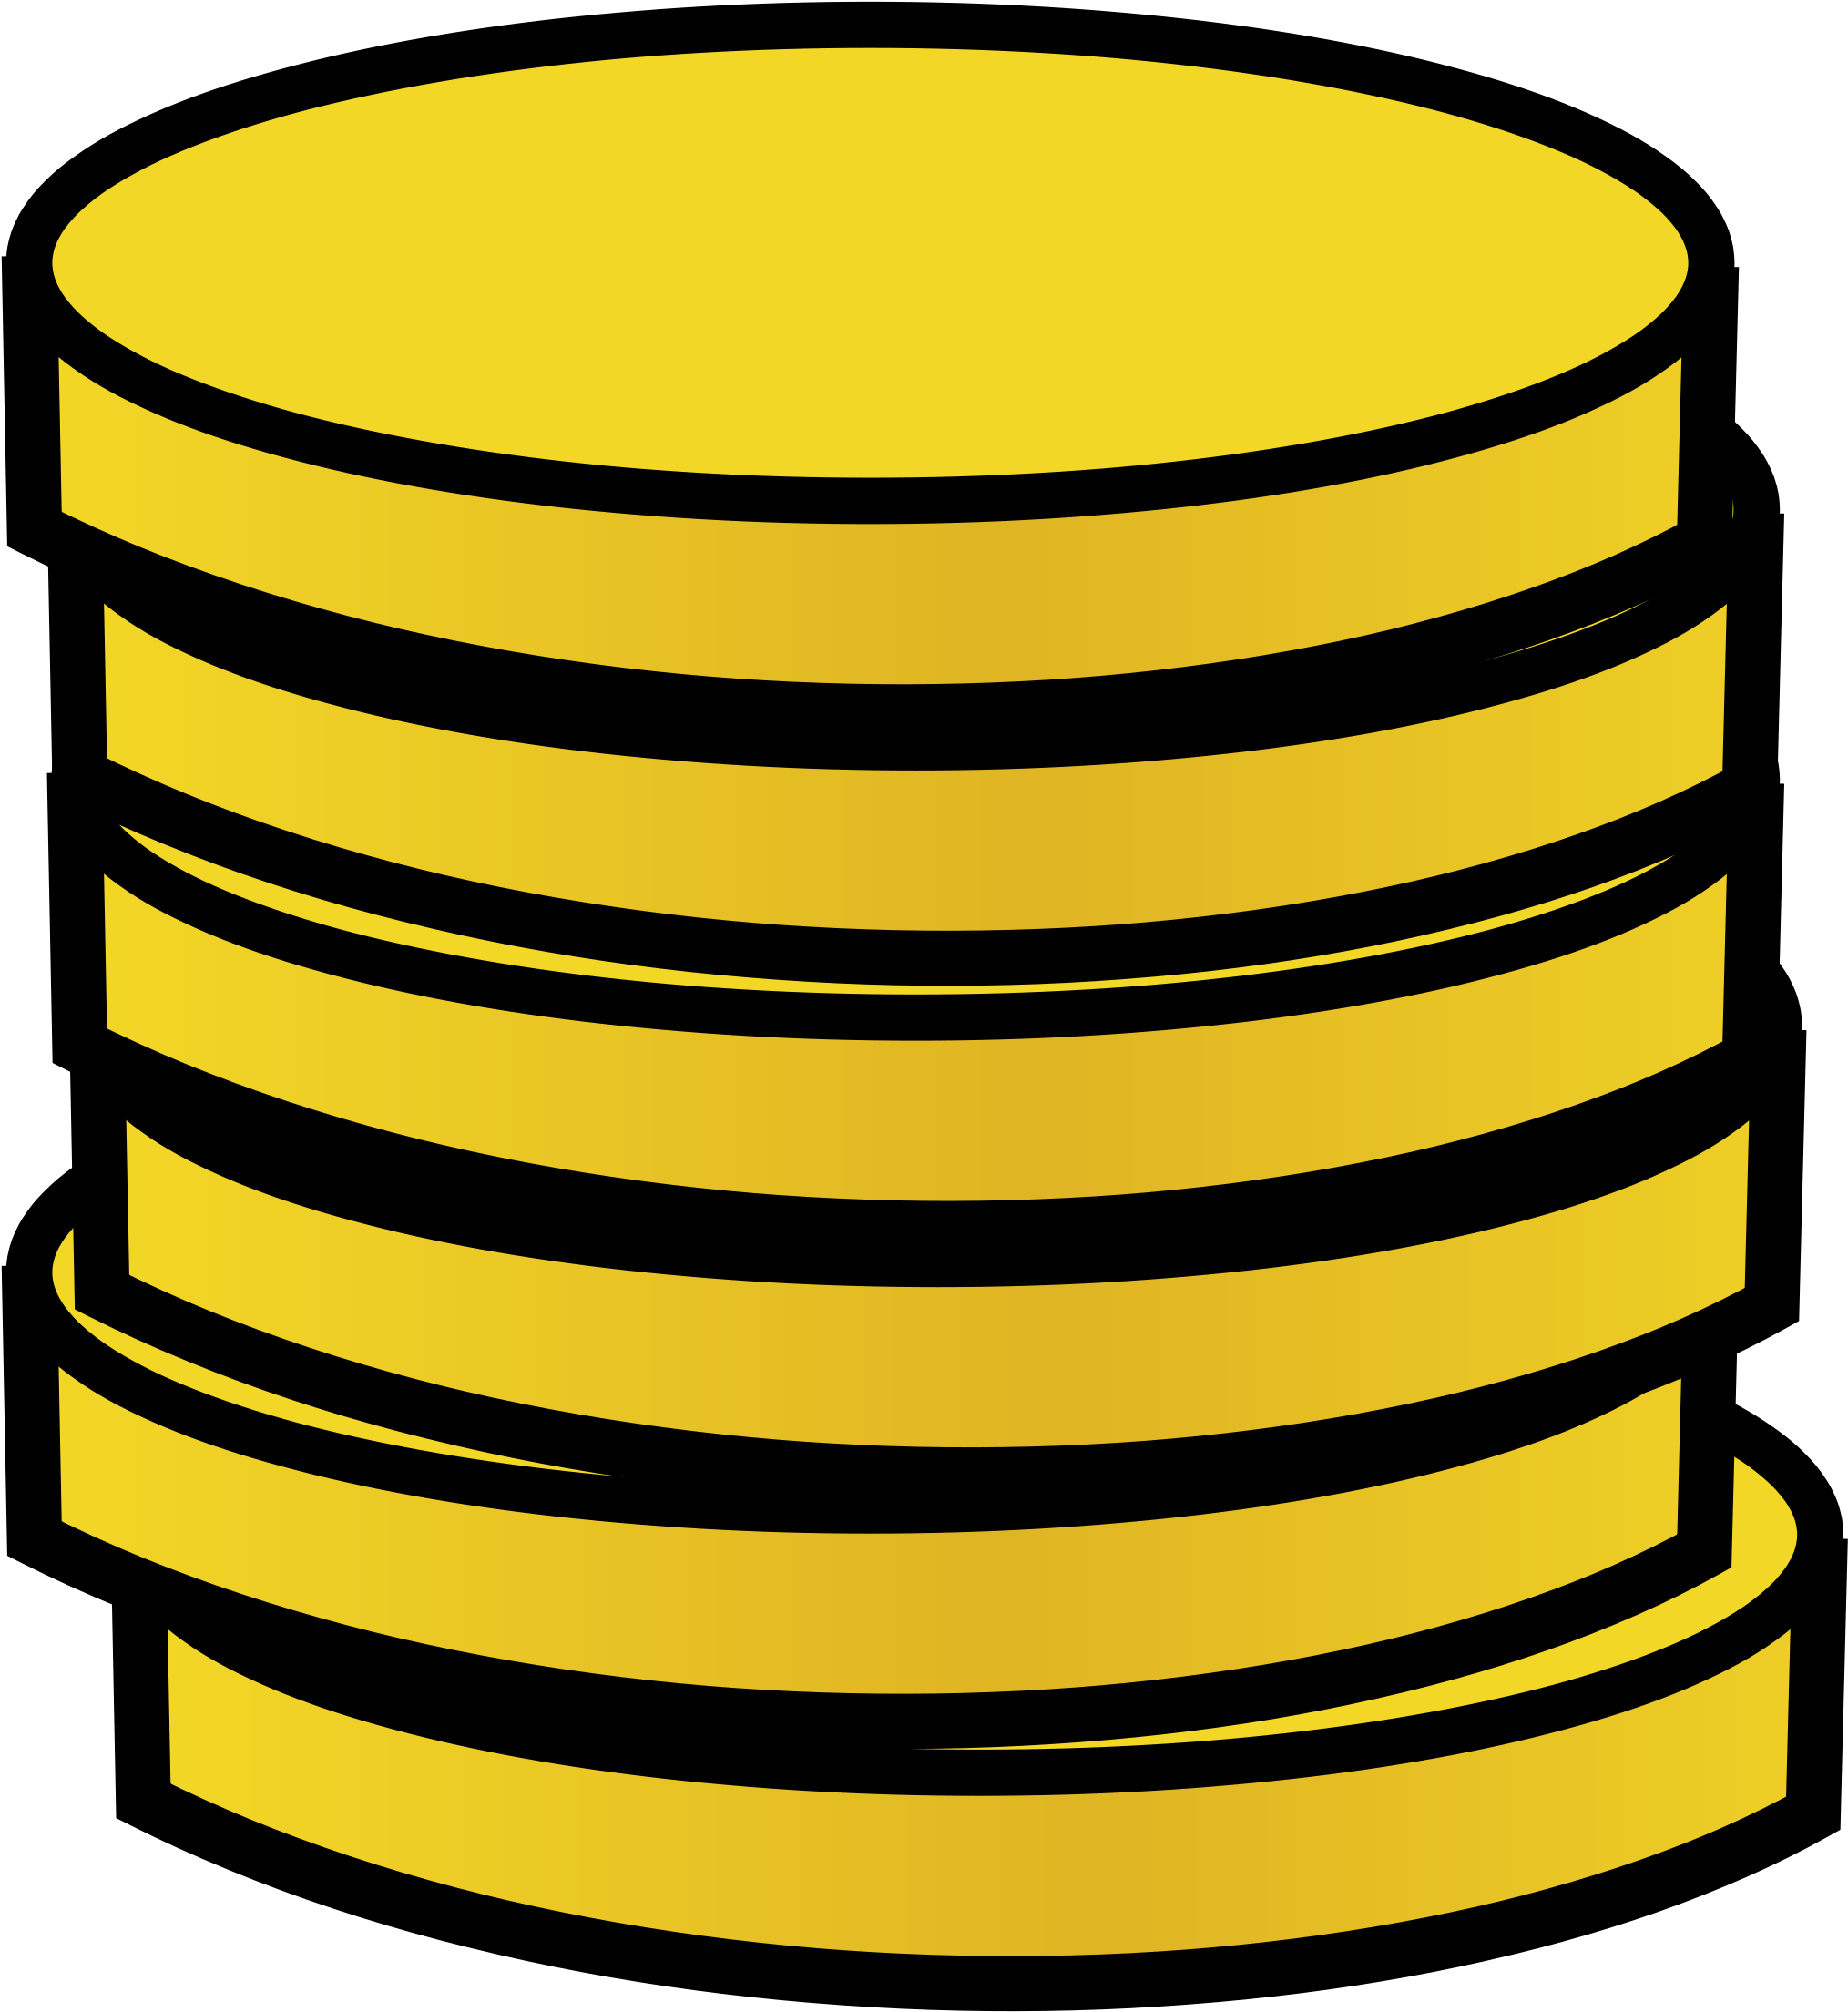 Gold Coin Clipart - Cartoon Gold Coins (2182x2400)